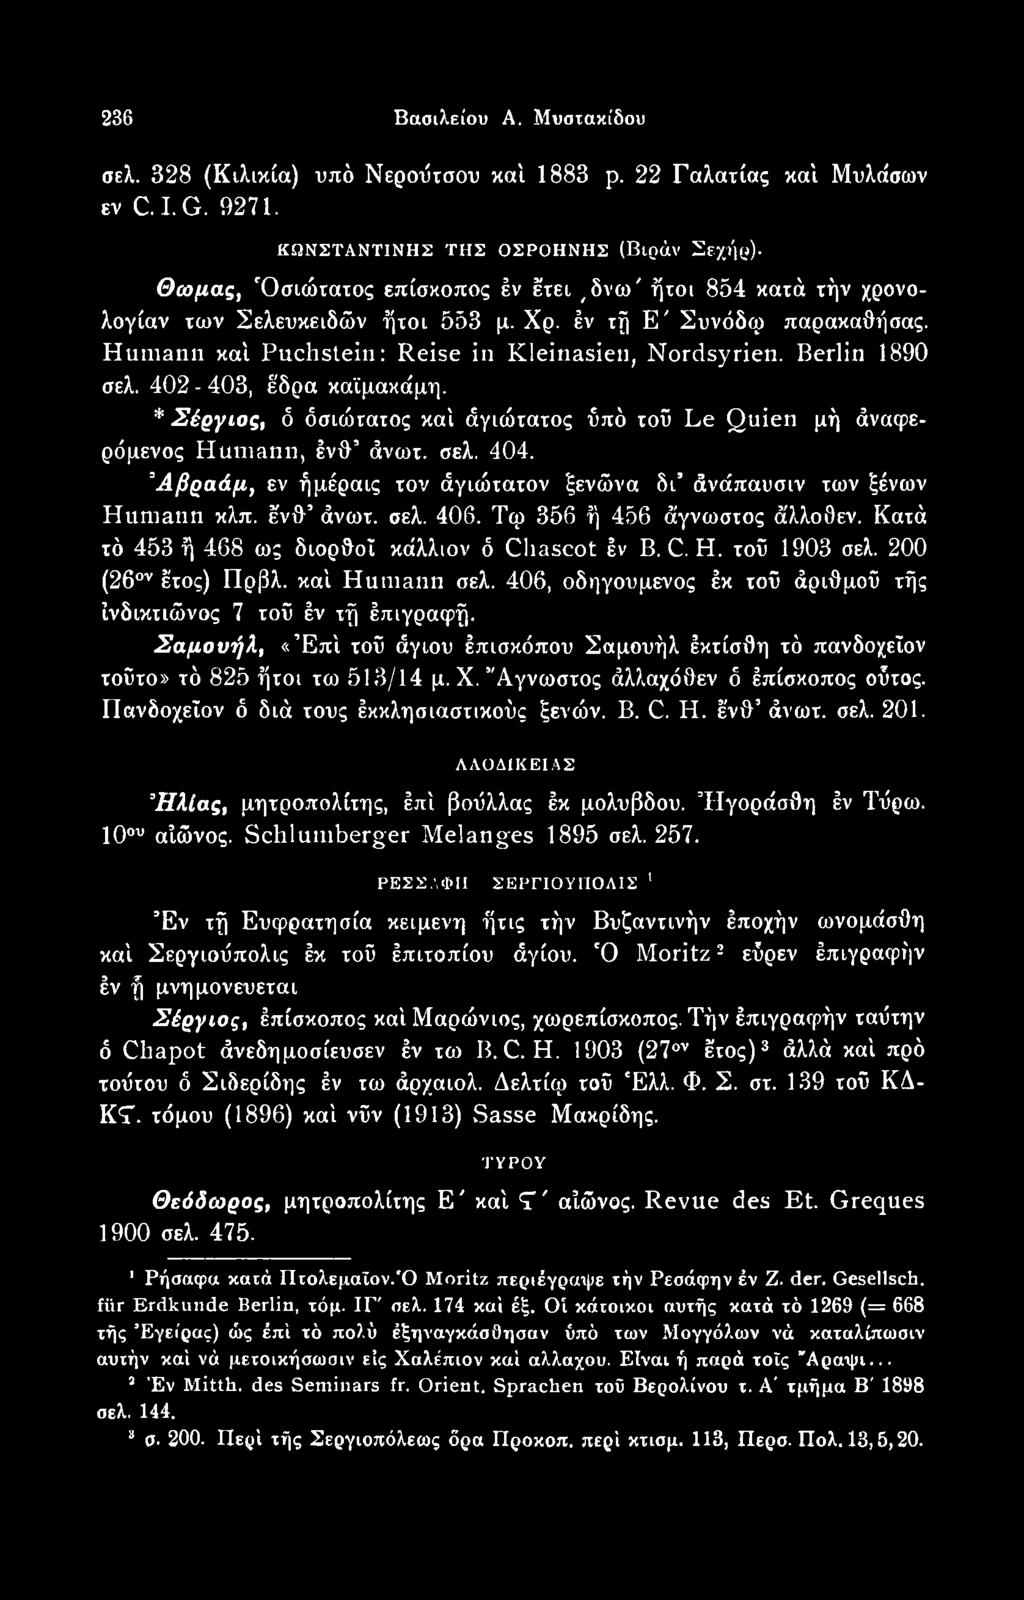 τοϋ 1903 σελ. 200 (26ον έτος) Πρβλ. καί Humann σελ. 406, οδηγούμενος έκ τοϋ άριθμοϋ τής ίνδικτιώνος 7 τοϋ έν τή έπιγραφή.